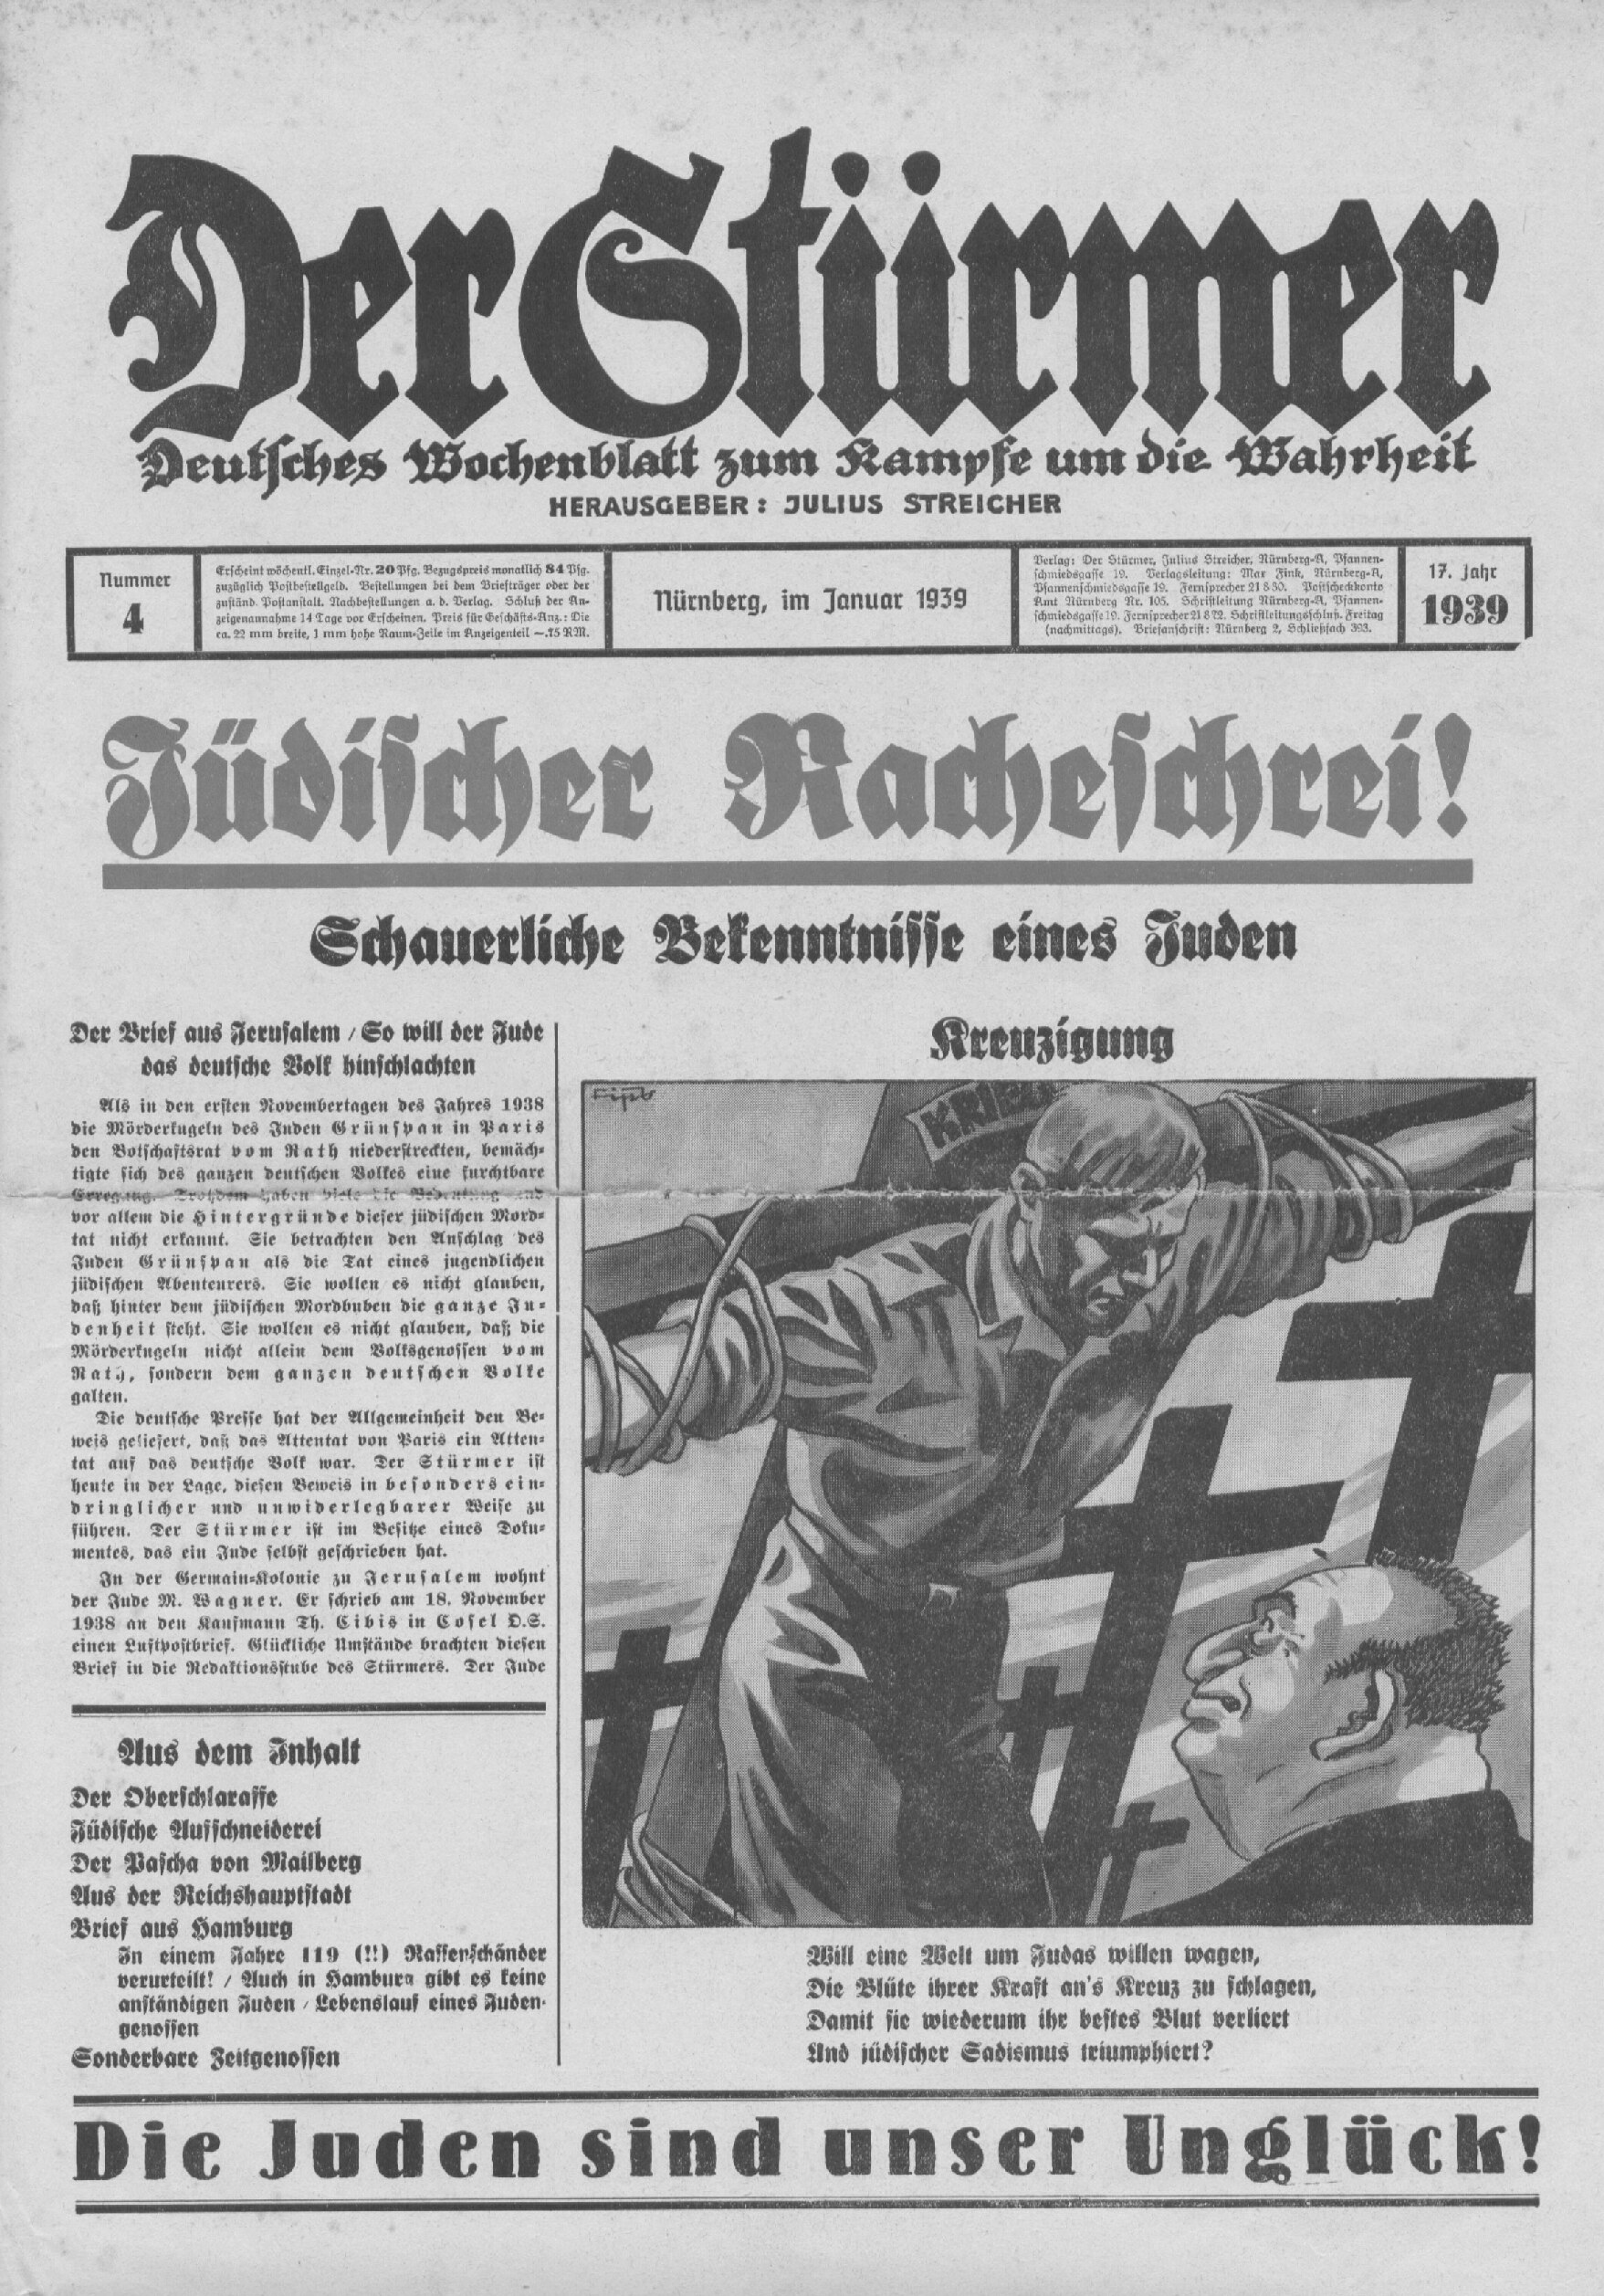 Der Stürmer - 1939 Nr. 04 - Jüdischer Racheschrei!